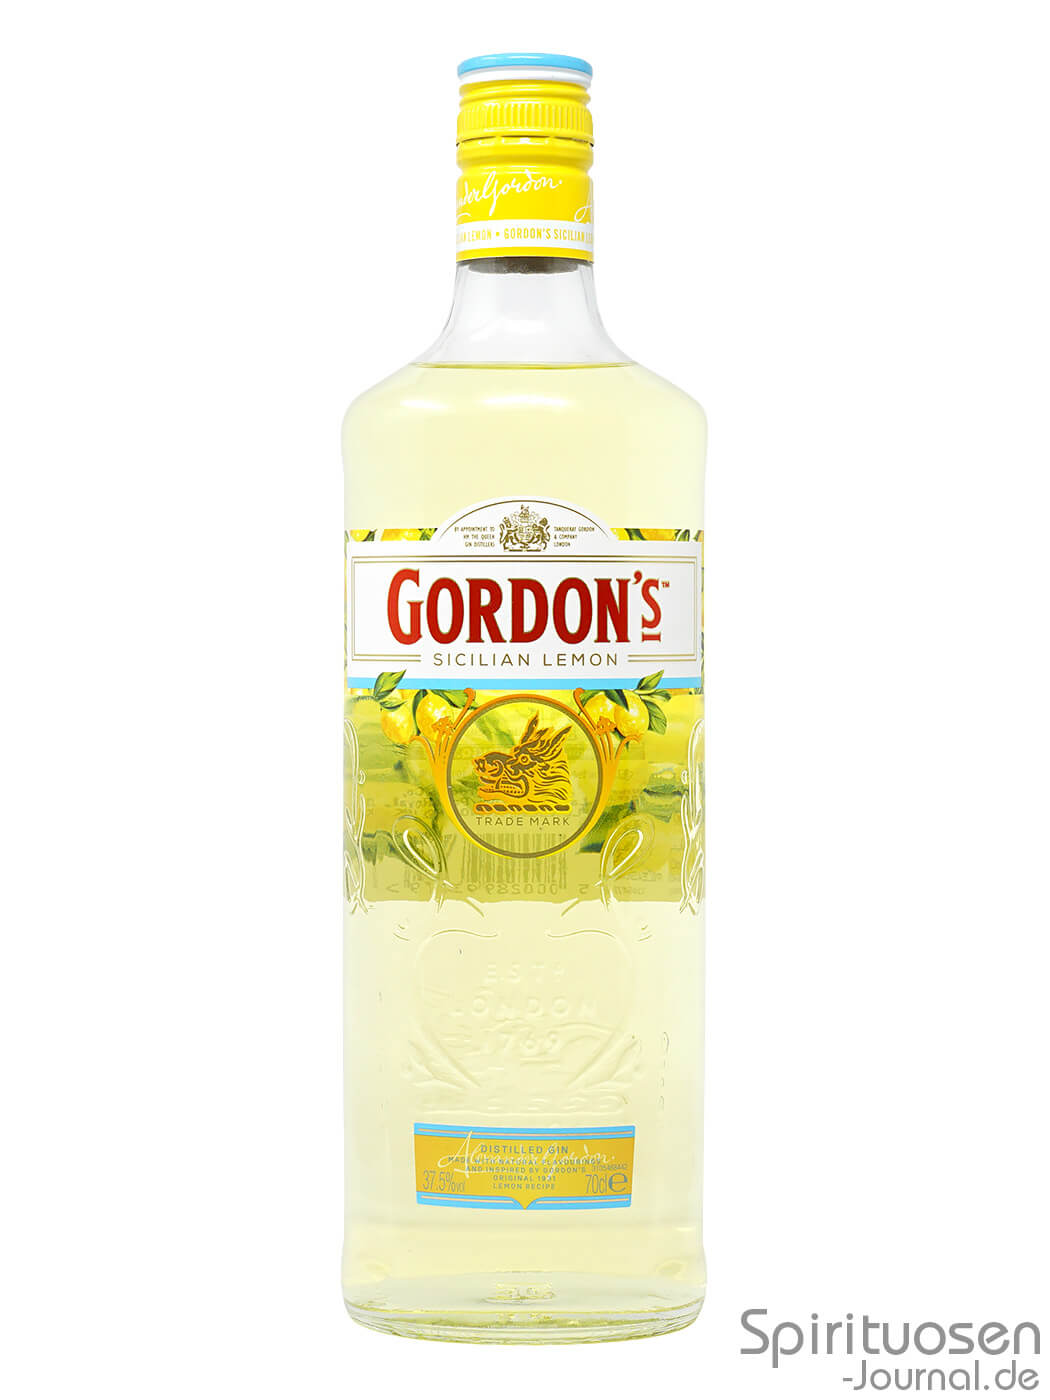 Gordon's Sicilian Lemon Distilled Gin im Test: Solider Zitrus-Gin für  kleines Geld –